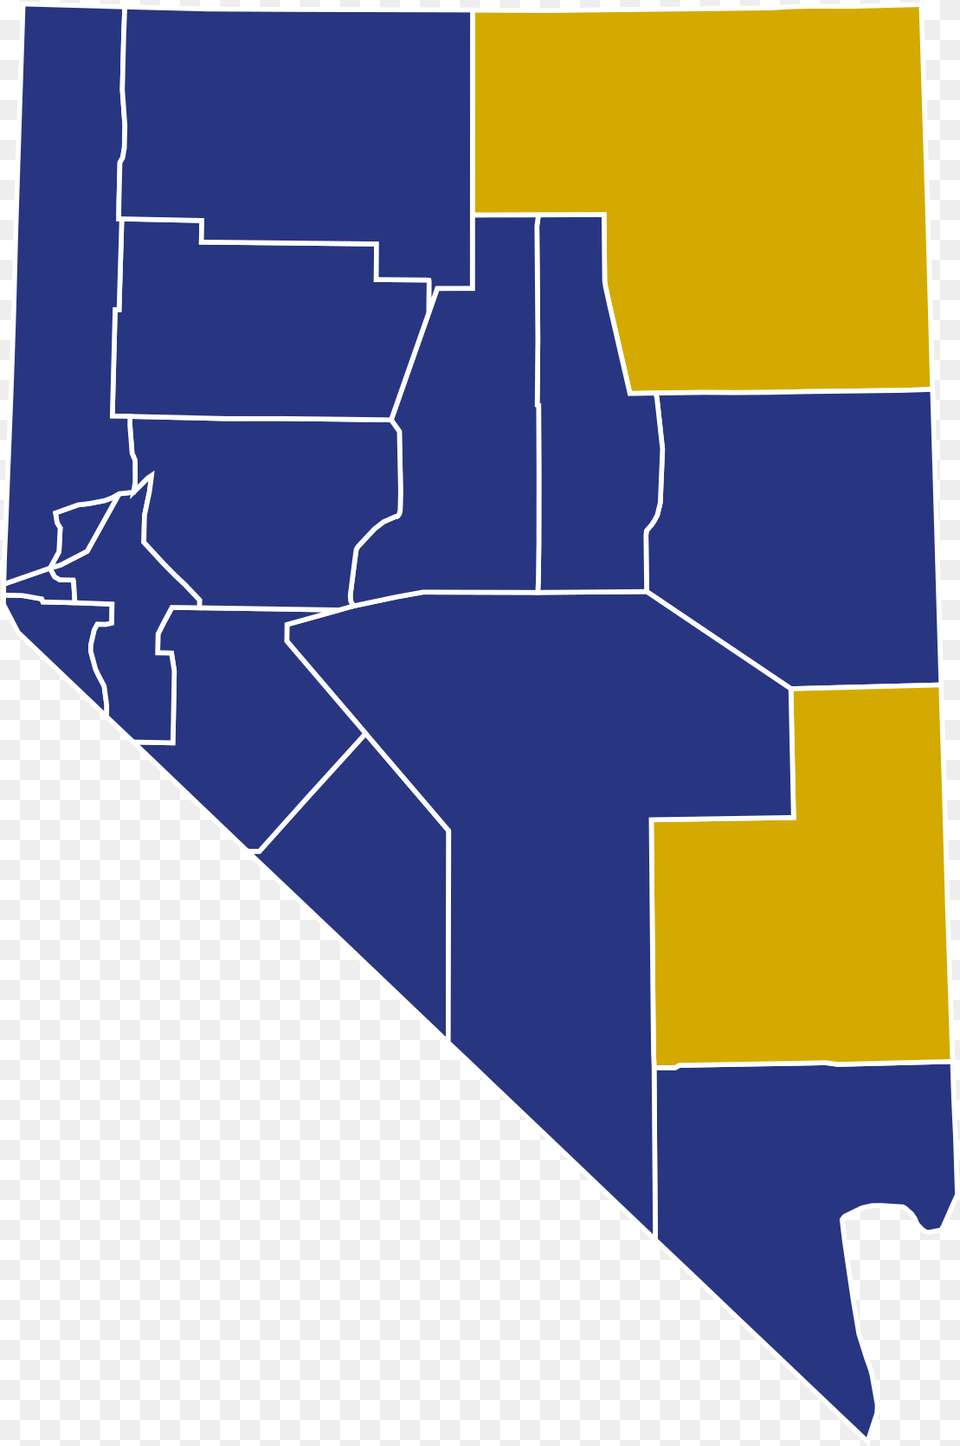 Republican Caucus Nevada 2016 Graphic Png Image